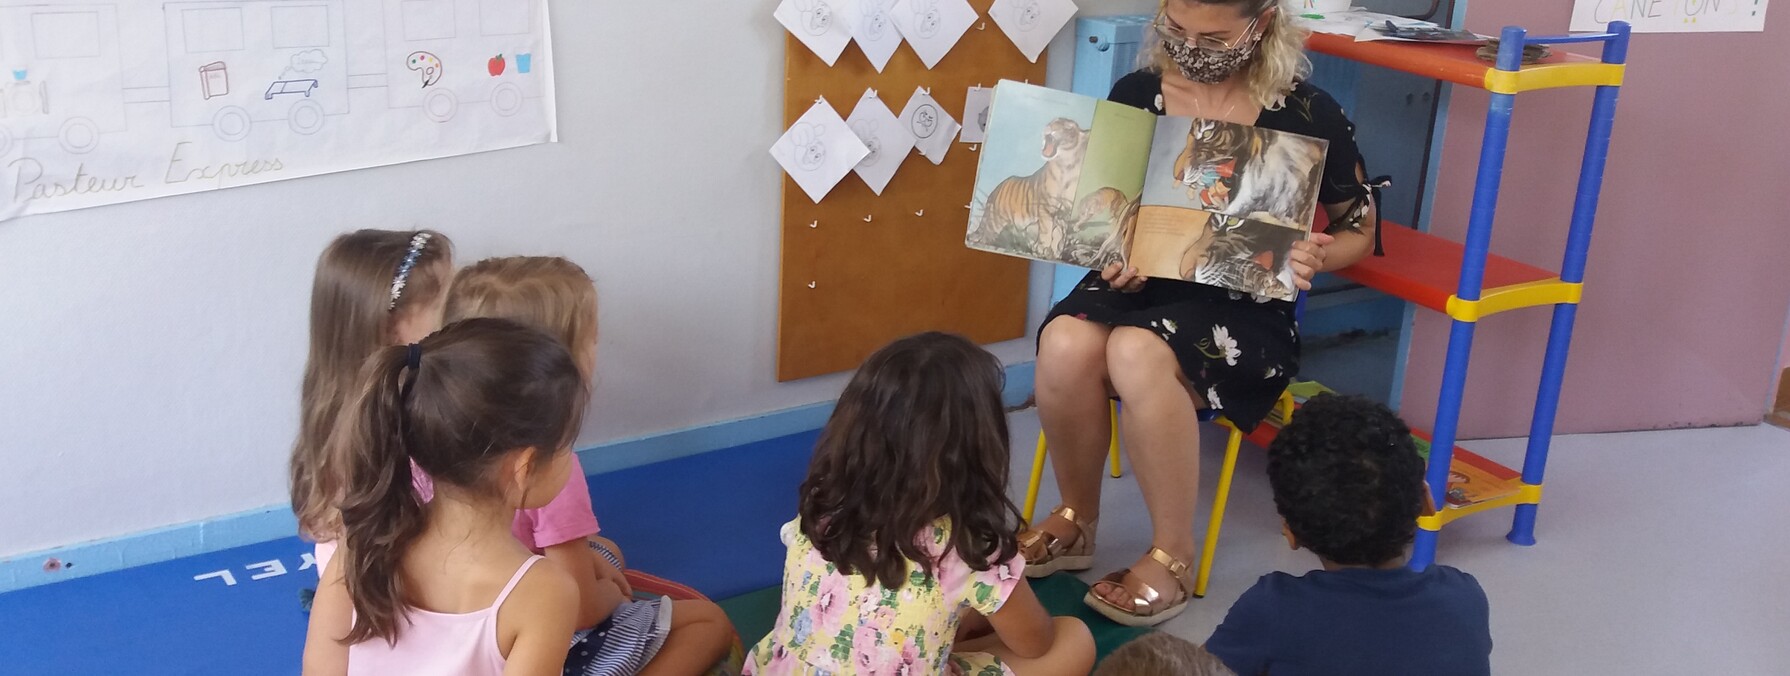 Des enfants sont réunis autour d'une animatrice qui leur lit une histoire